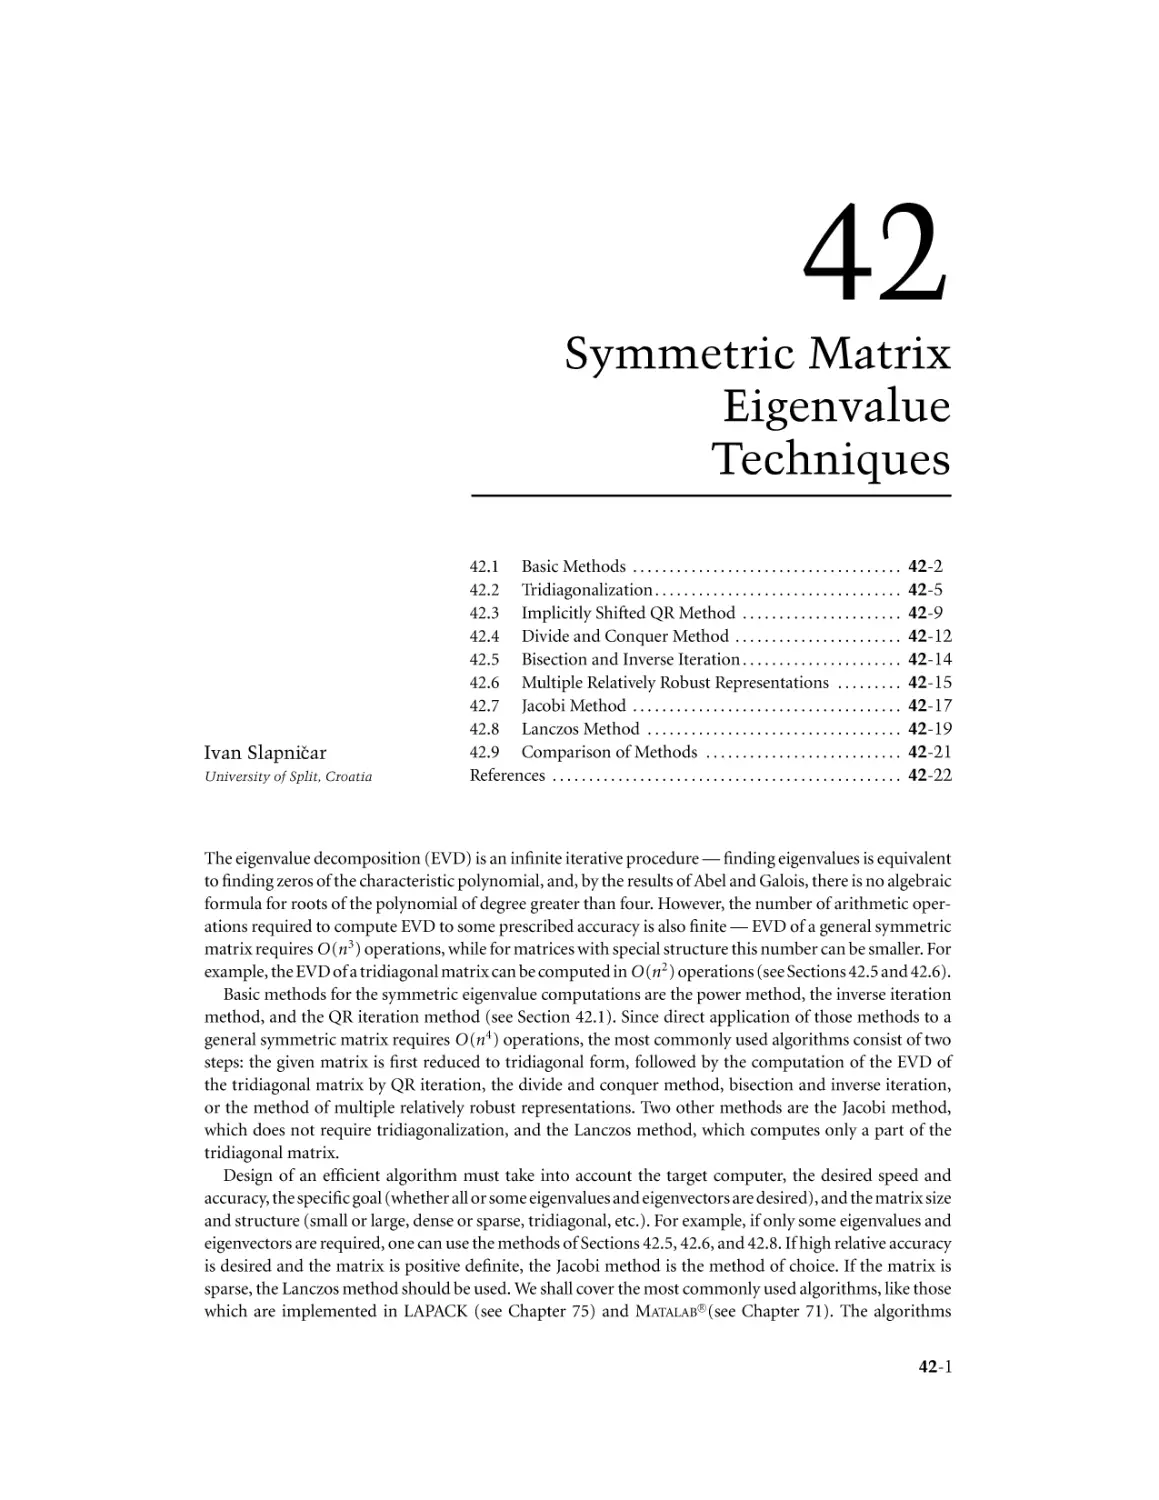 Chapter 42. Symmetric Matrix Eigenvalue Techniques